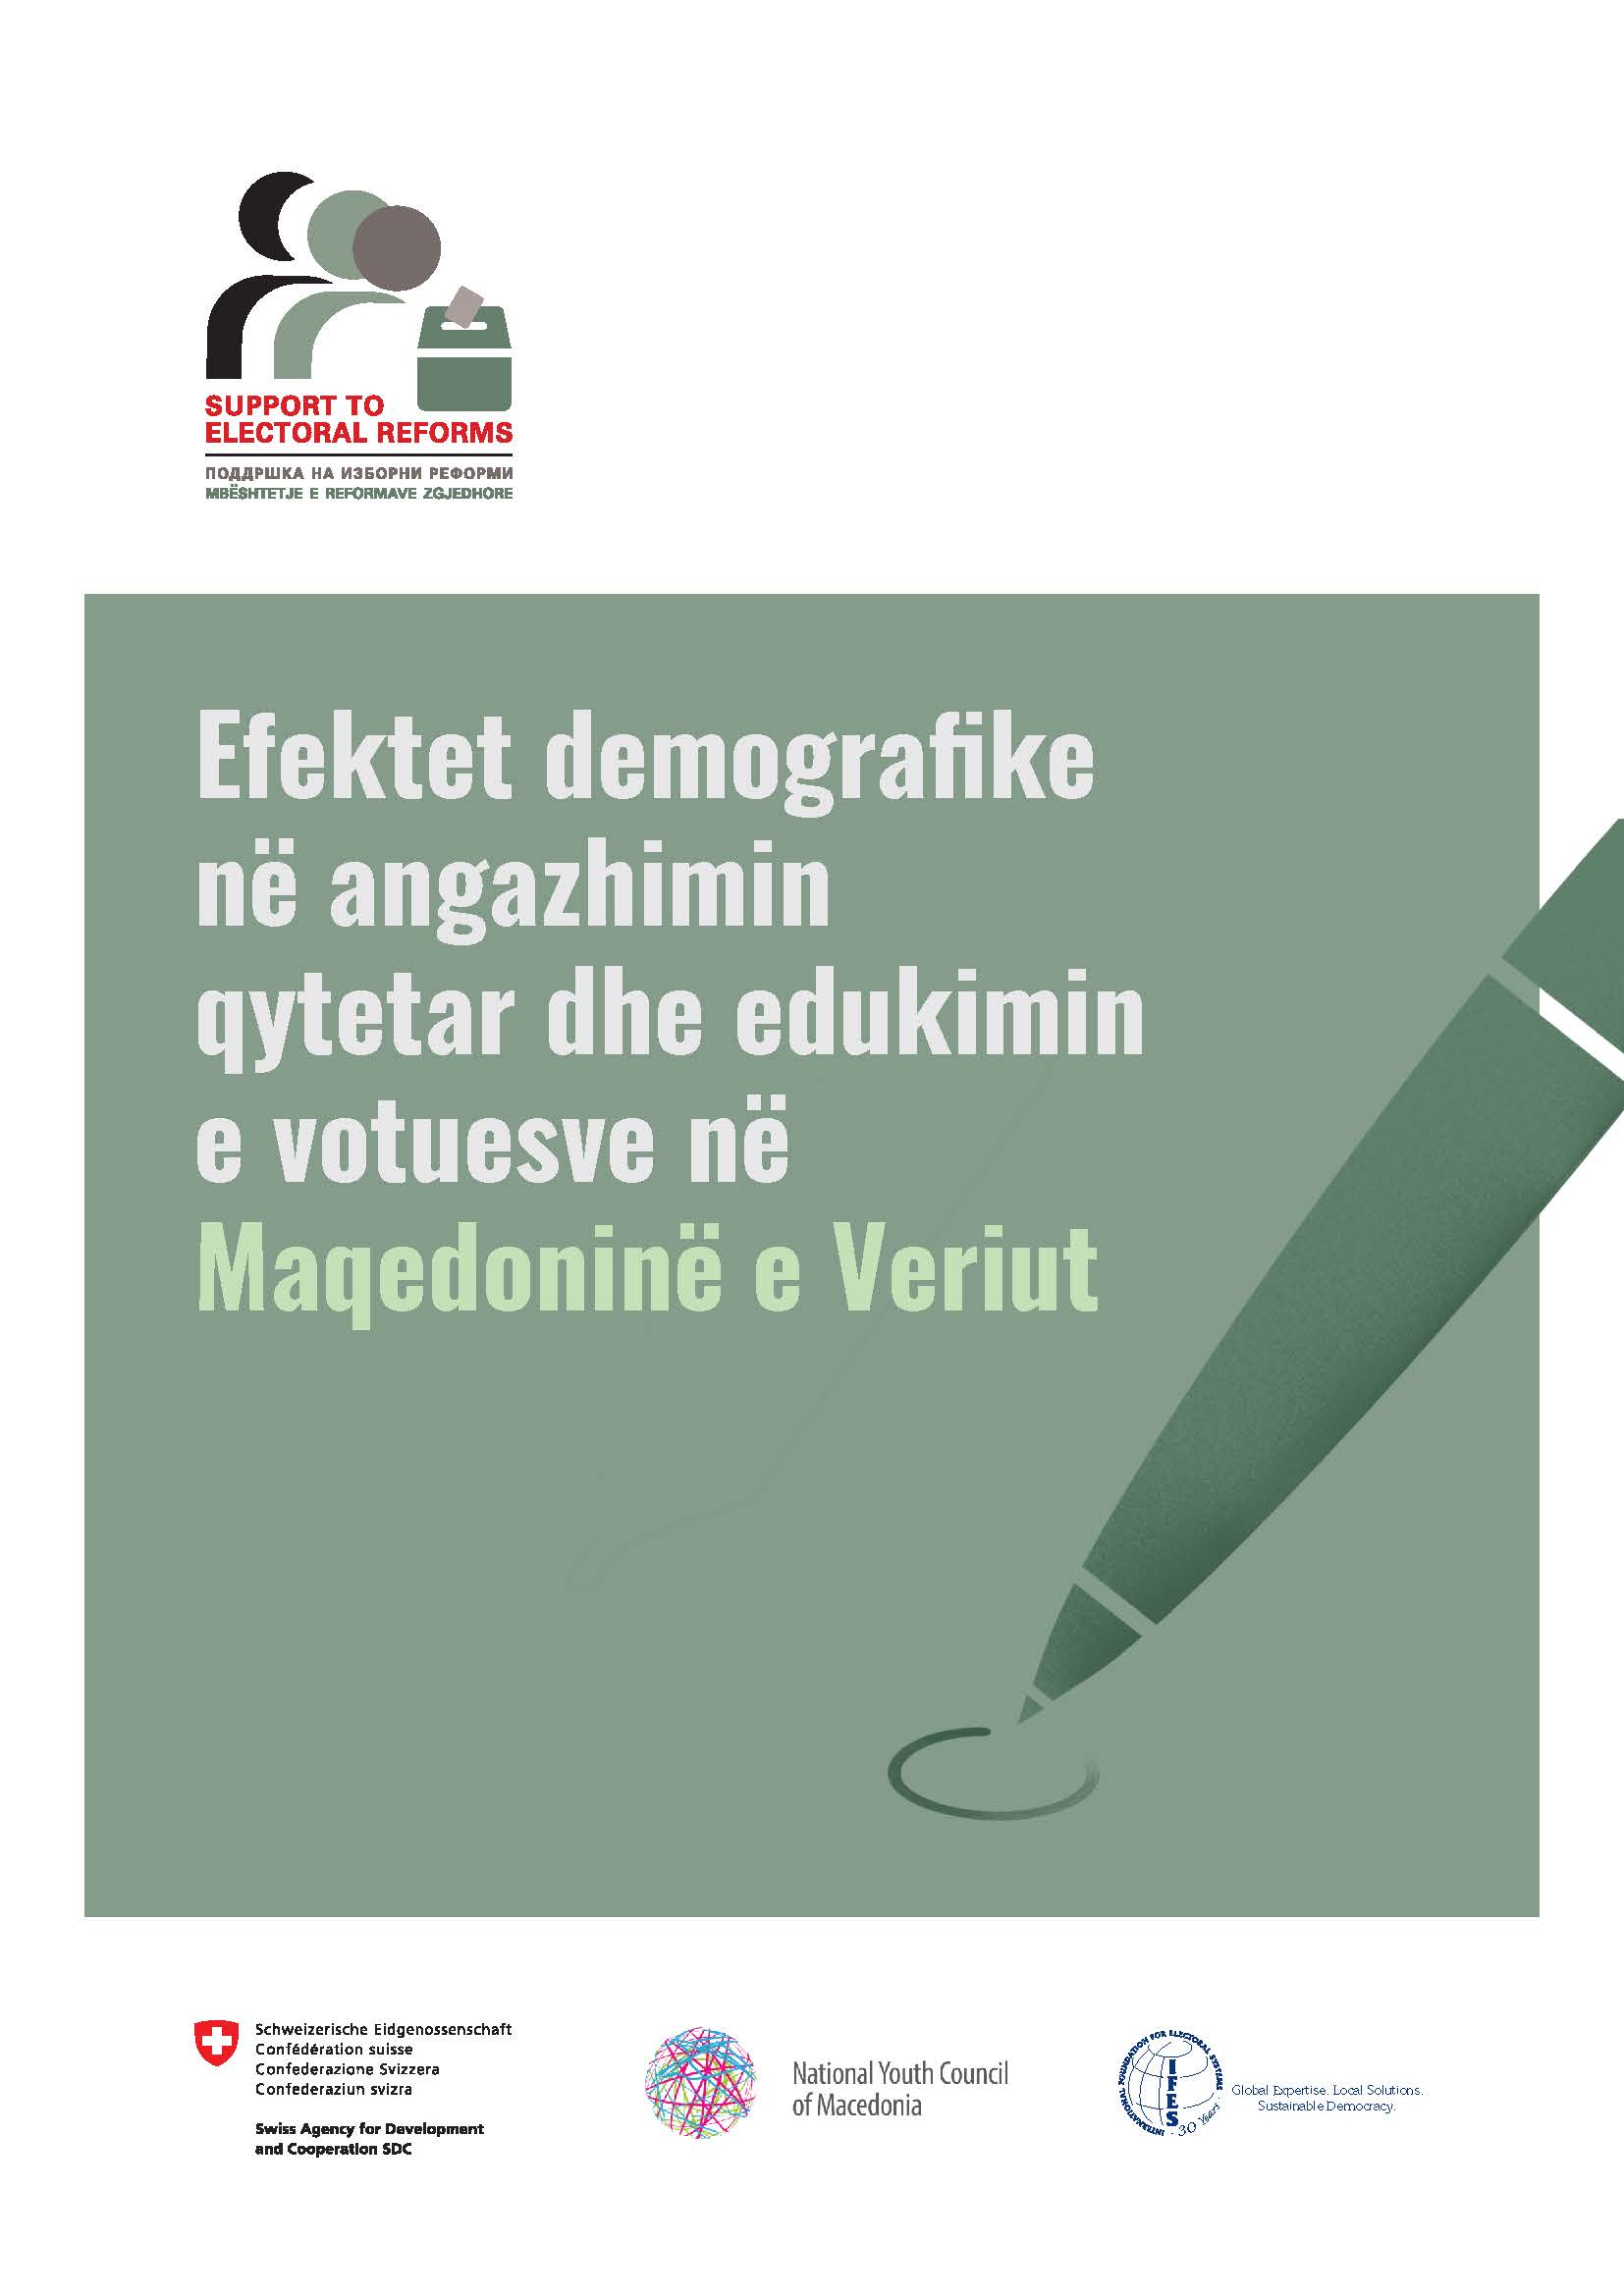 Efektet demografike në angazhimin e qytetar në jetën publike dhe edukimin e votuesve në Maqedoninë e Veriut